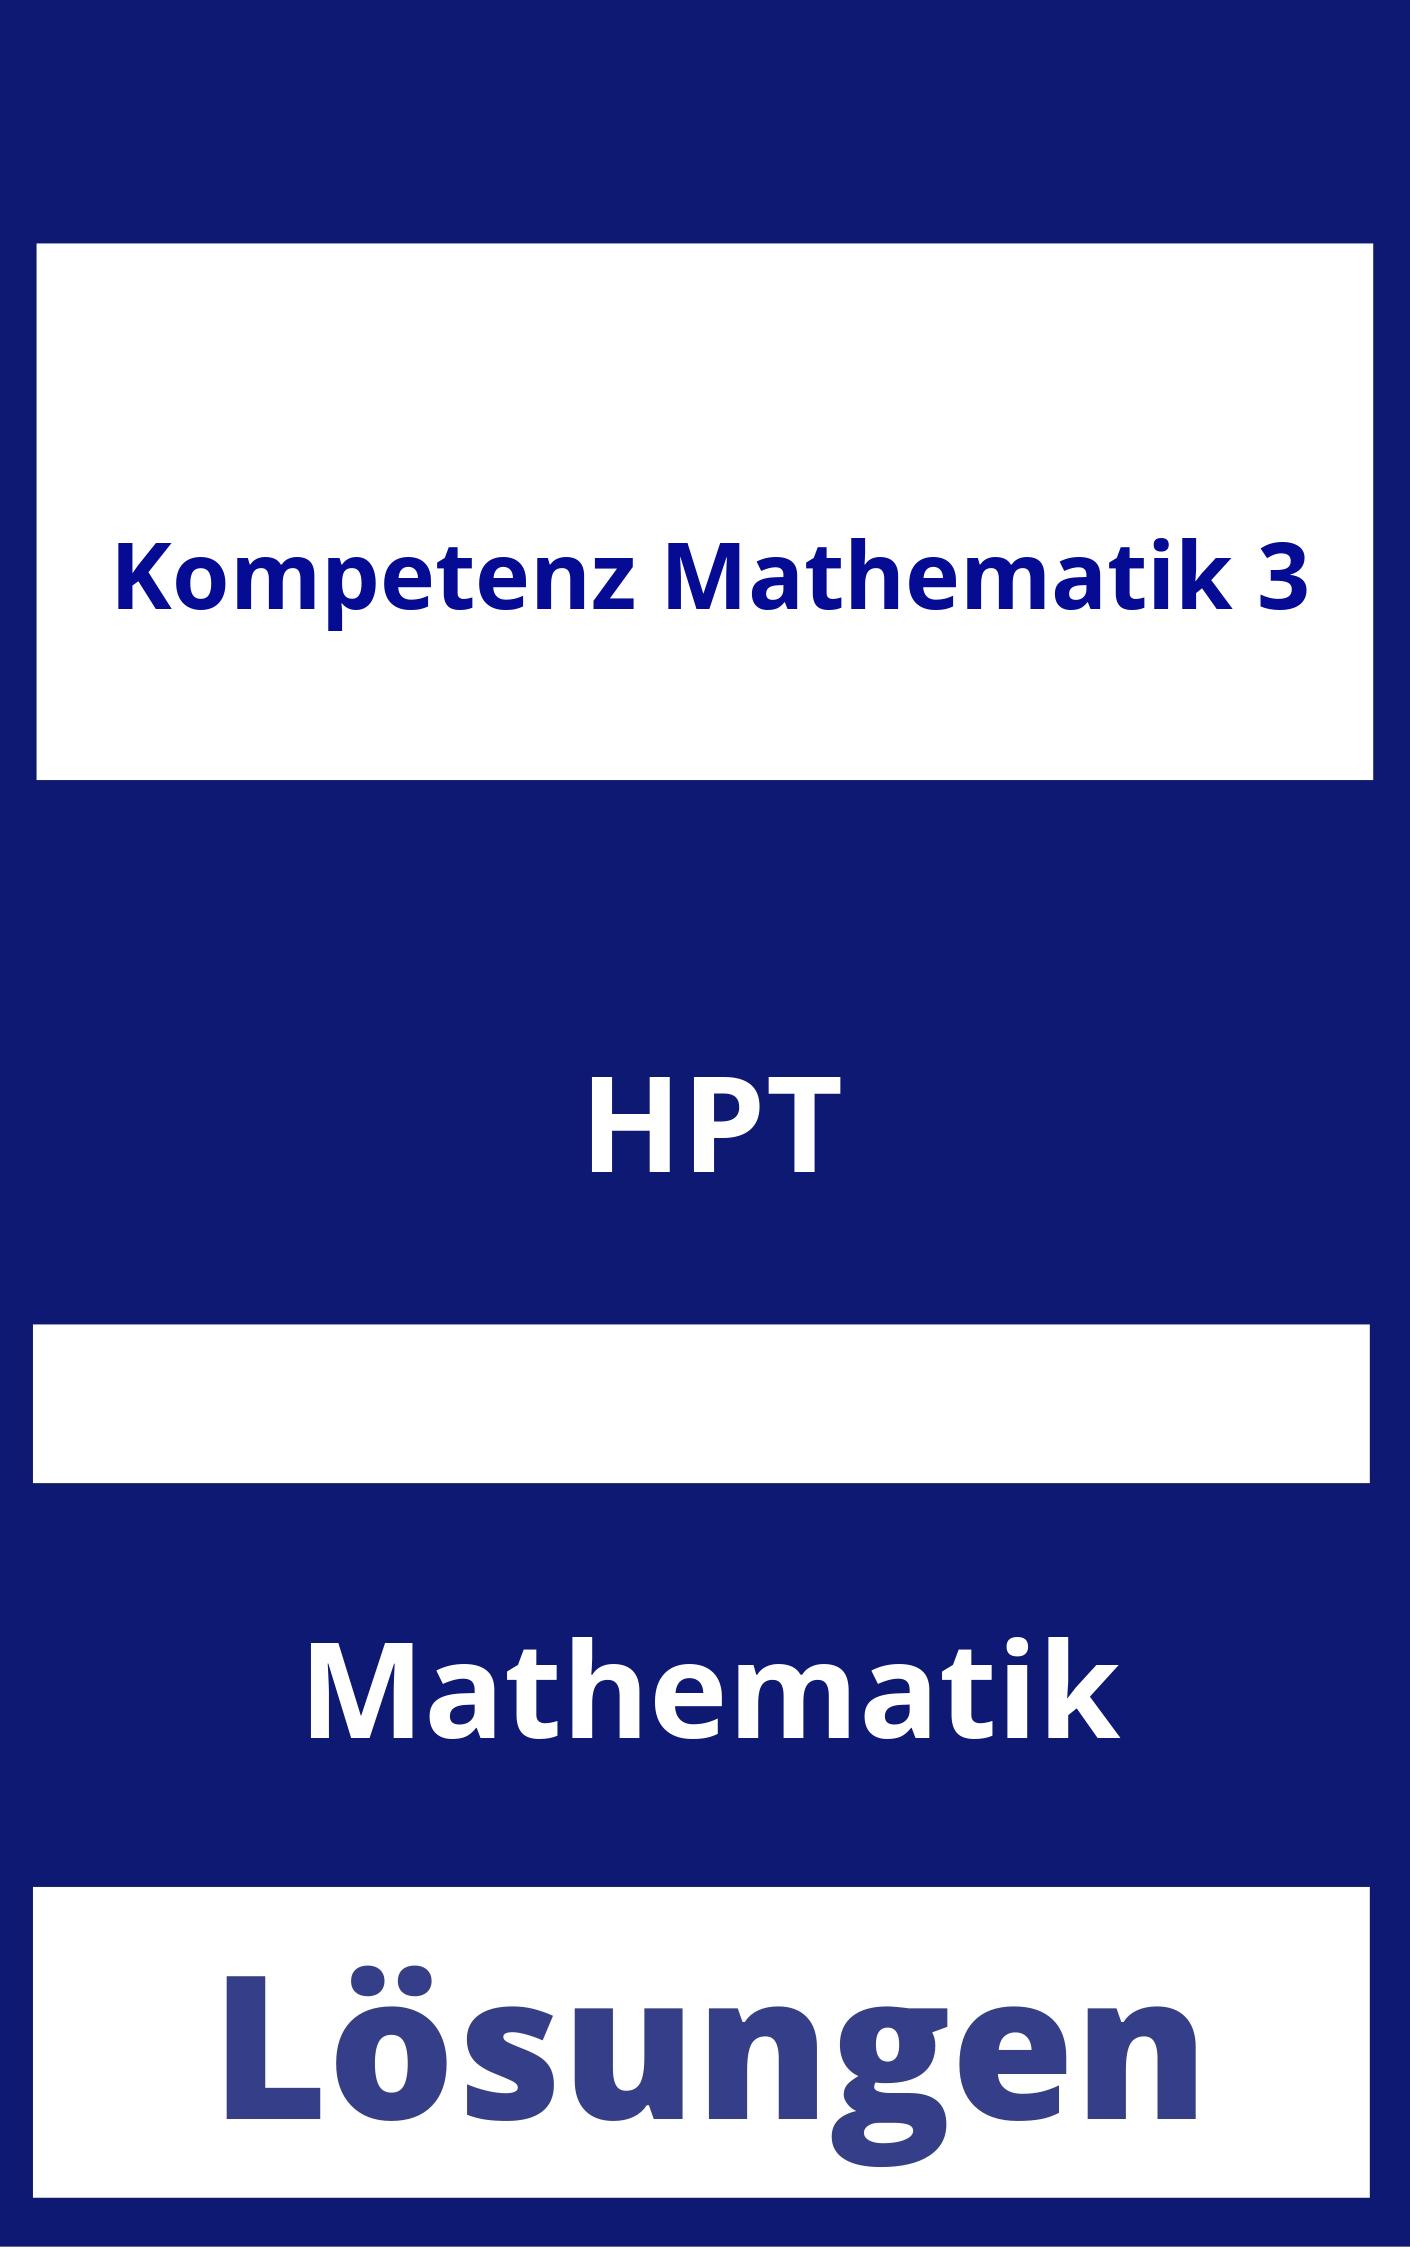 Kompetenz Mathematik 3 Lösungen PDF